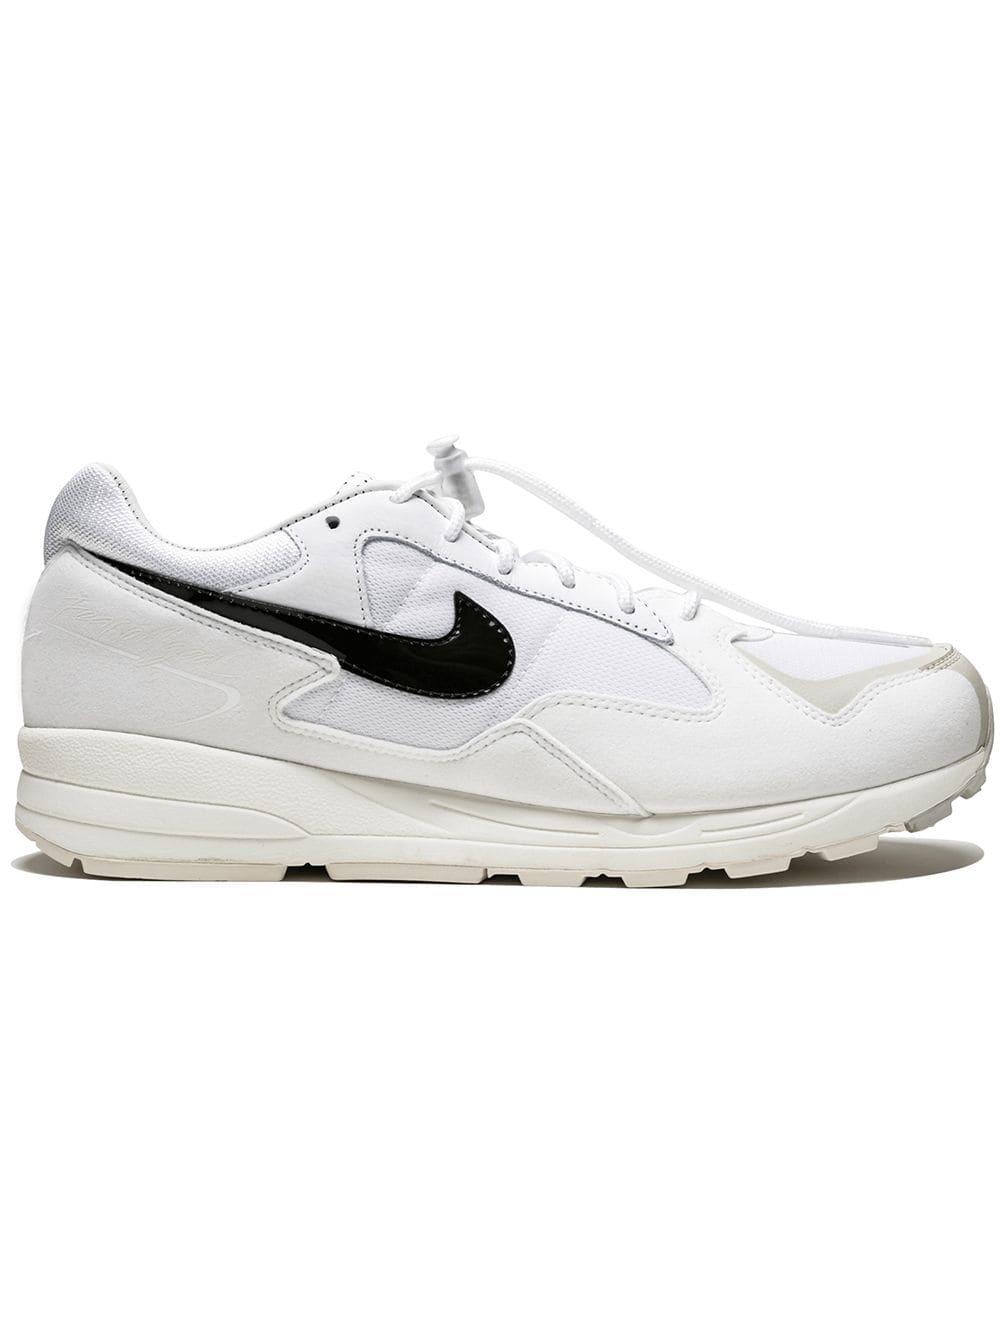 Nike Felt Air Skylon 2 / Fog Sneakers in 7.5 (White) for Men - Save 12% ...